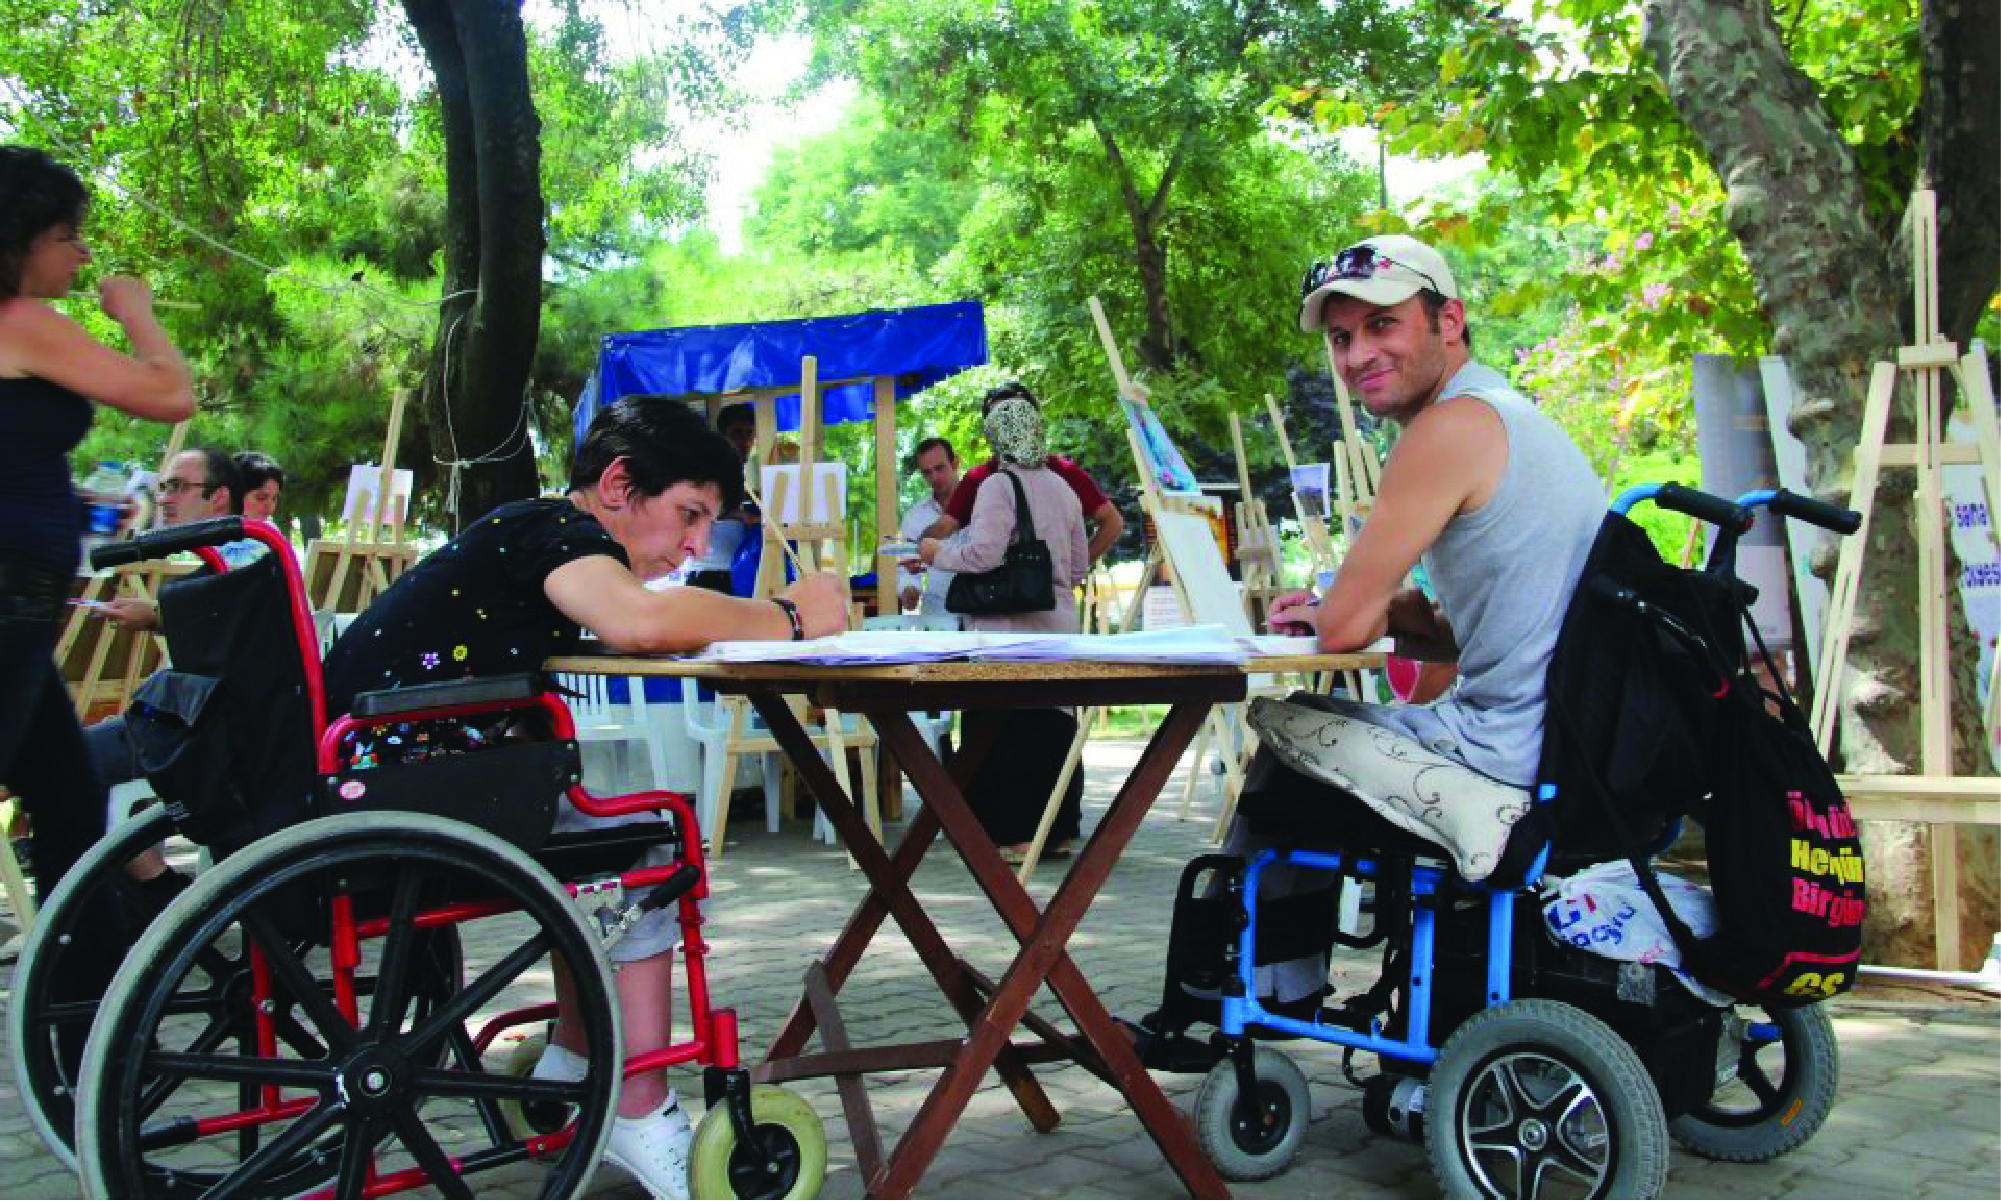 Engelli Yaşamı Yaşatma Derneği etkinliklerimiz